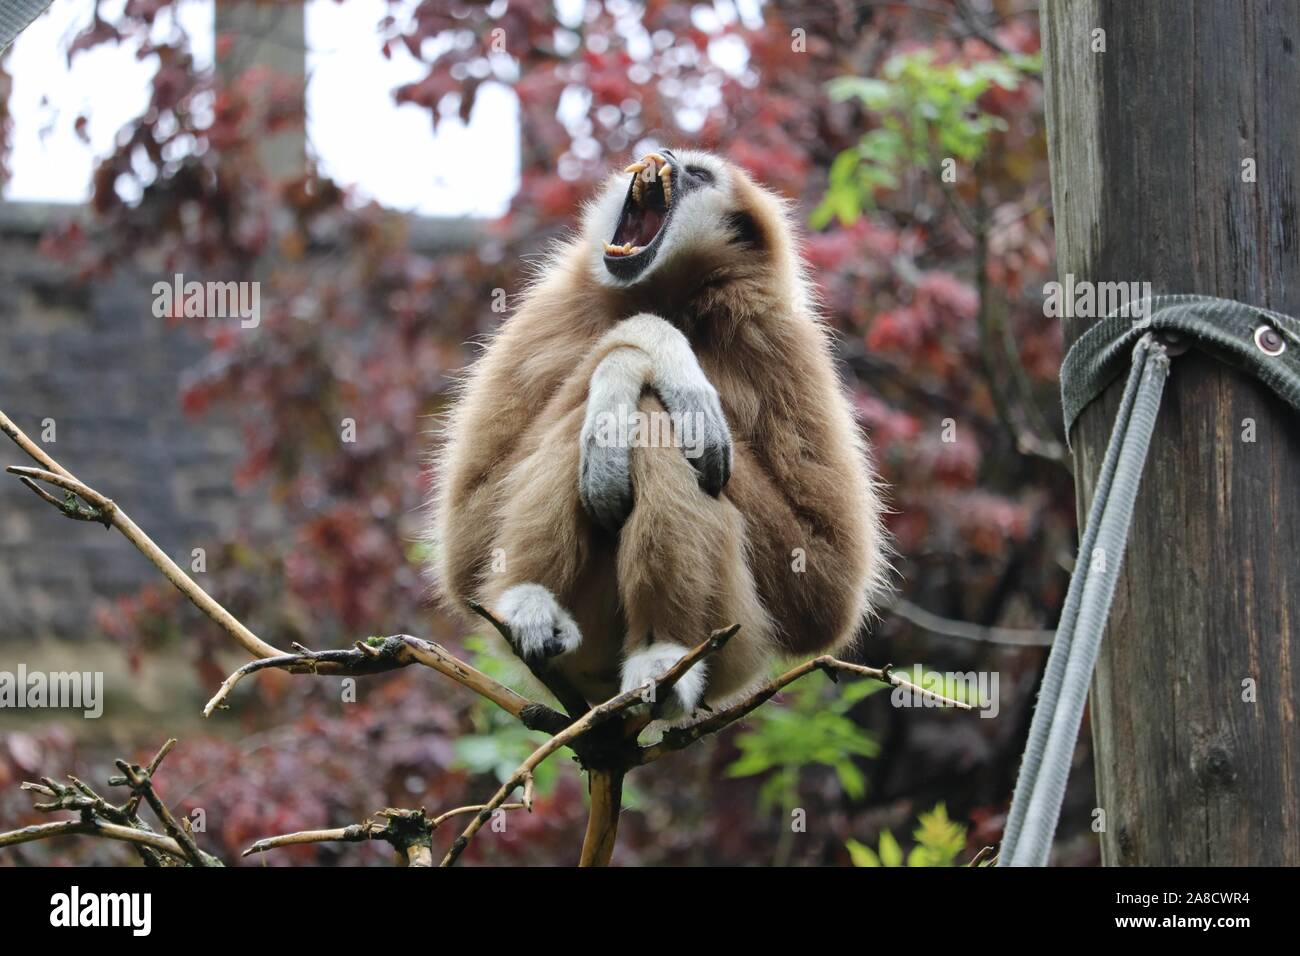 Weibliche Lar Gibbon, Penny (Hylobates lar) Stockfoto